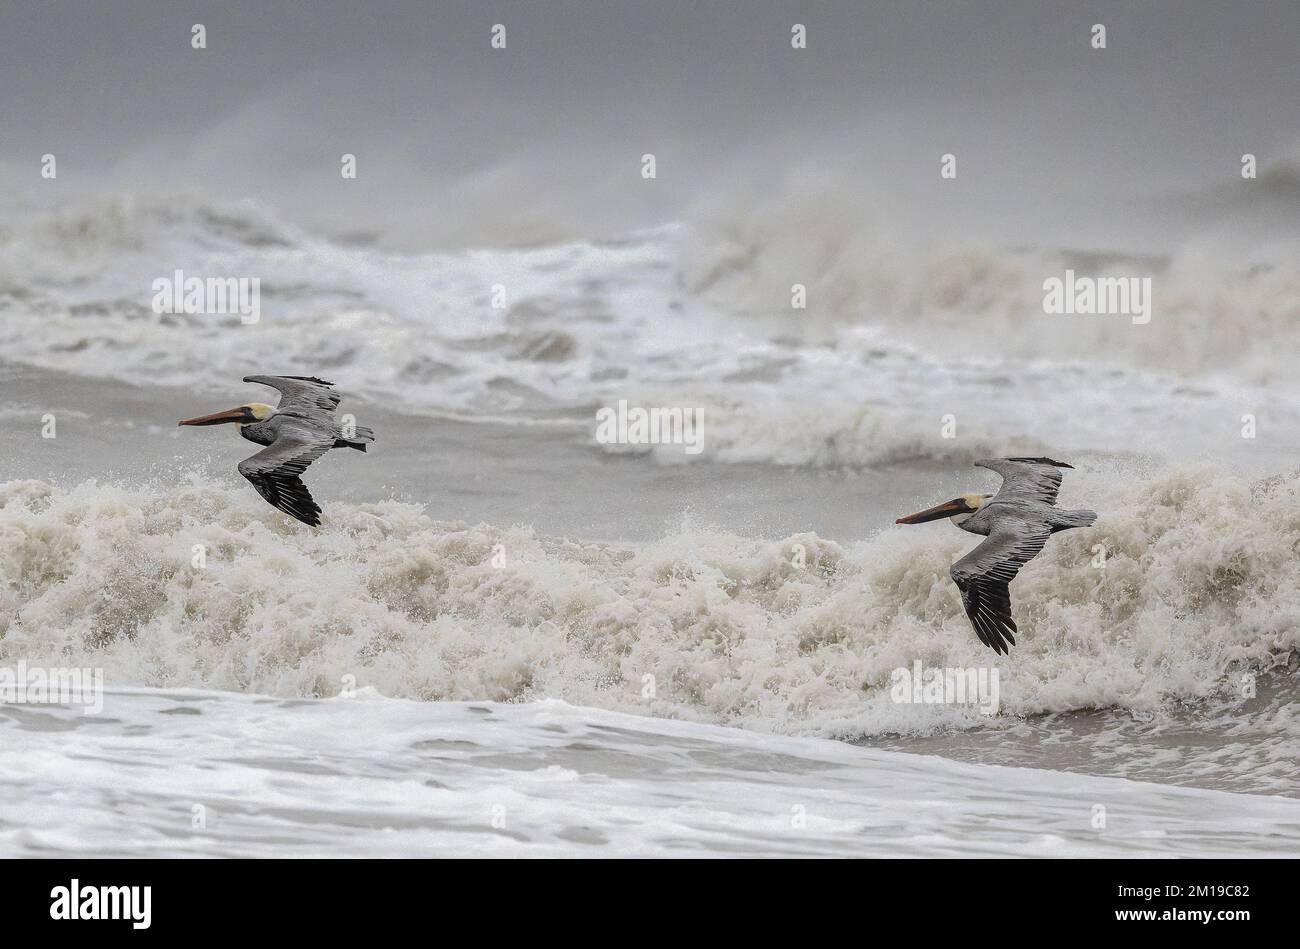 Pelicani marroni, Pelecanus occidentalis, volando sopra i mari accidentati nel Golfo del Messico, Texas meridionale, dopo le galee invernali. Foto Stock